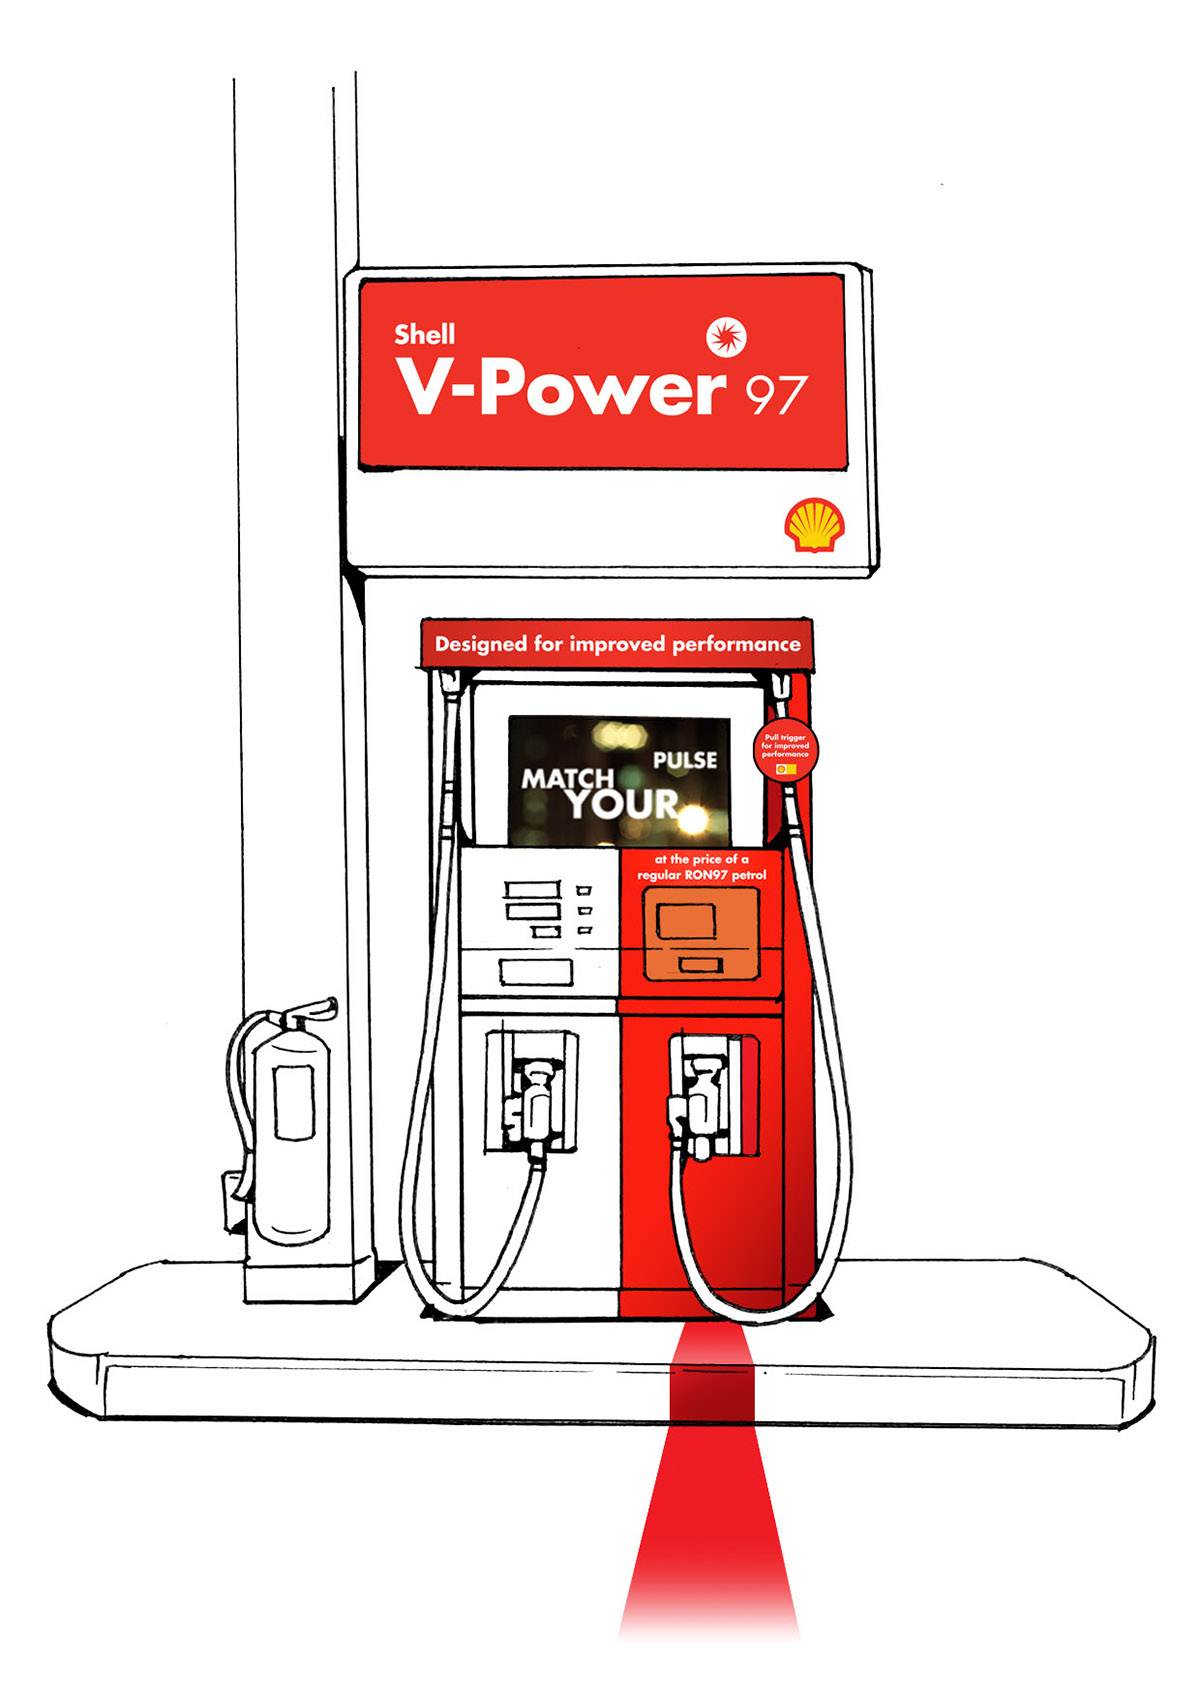 shell V-power 97 Shell Station design creative idea Advertising  promoter red branding 